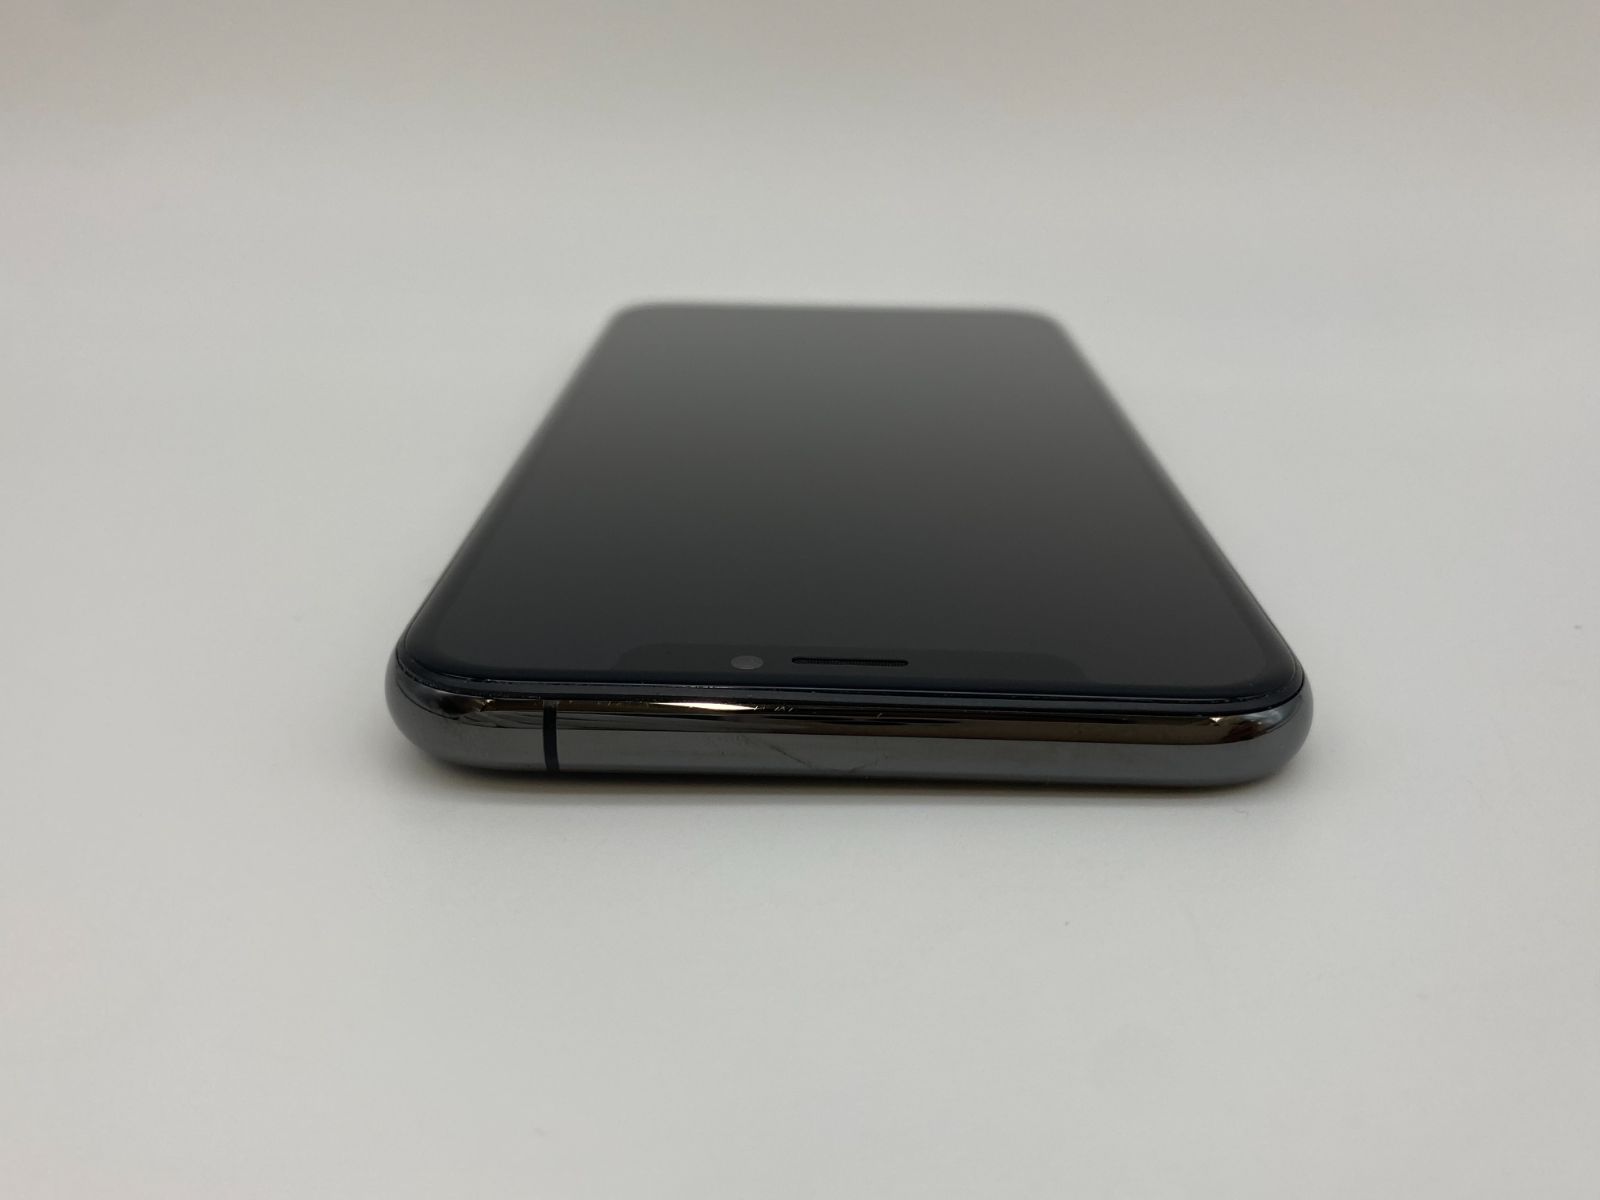 052 iPhoneXS 256G ブラック/新品バッテリー100%/シムフリー